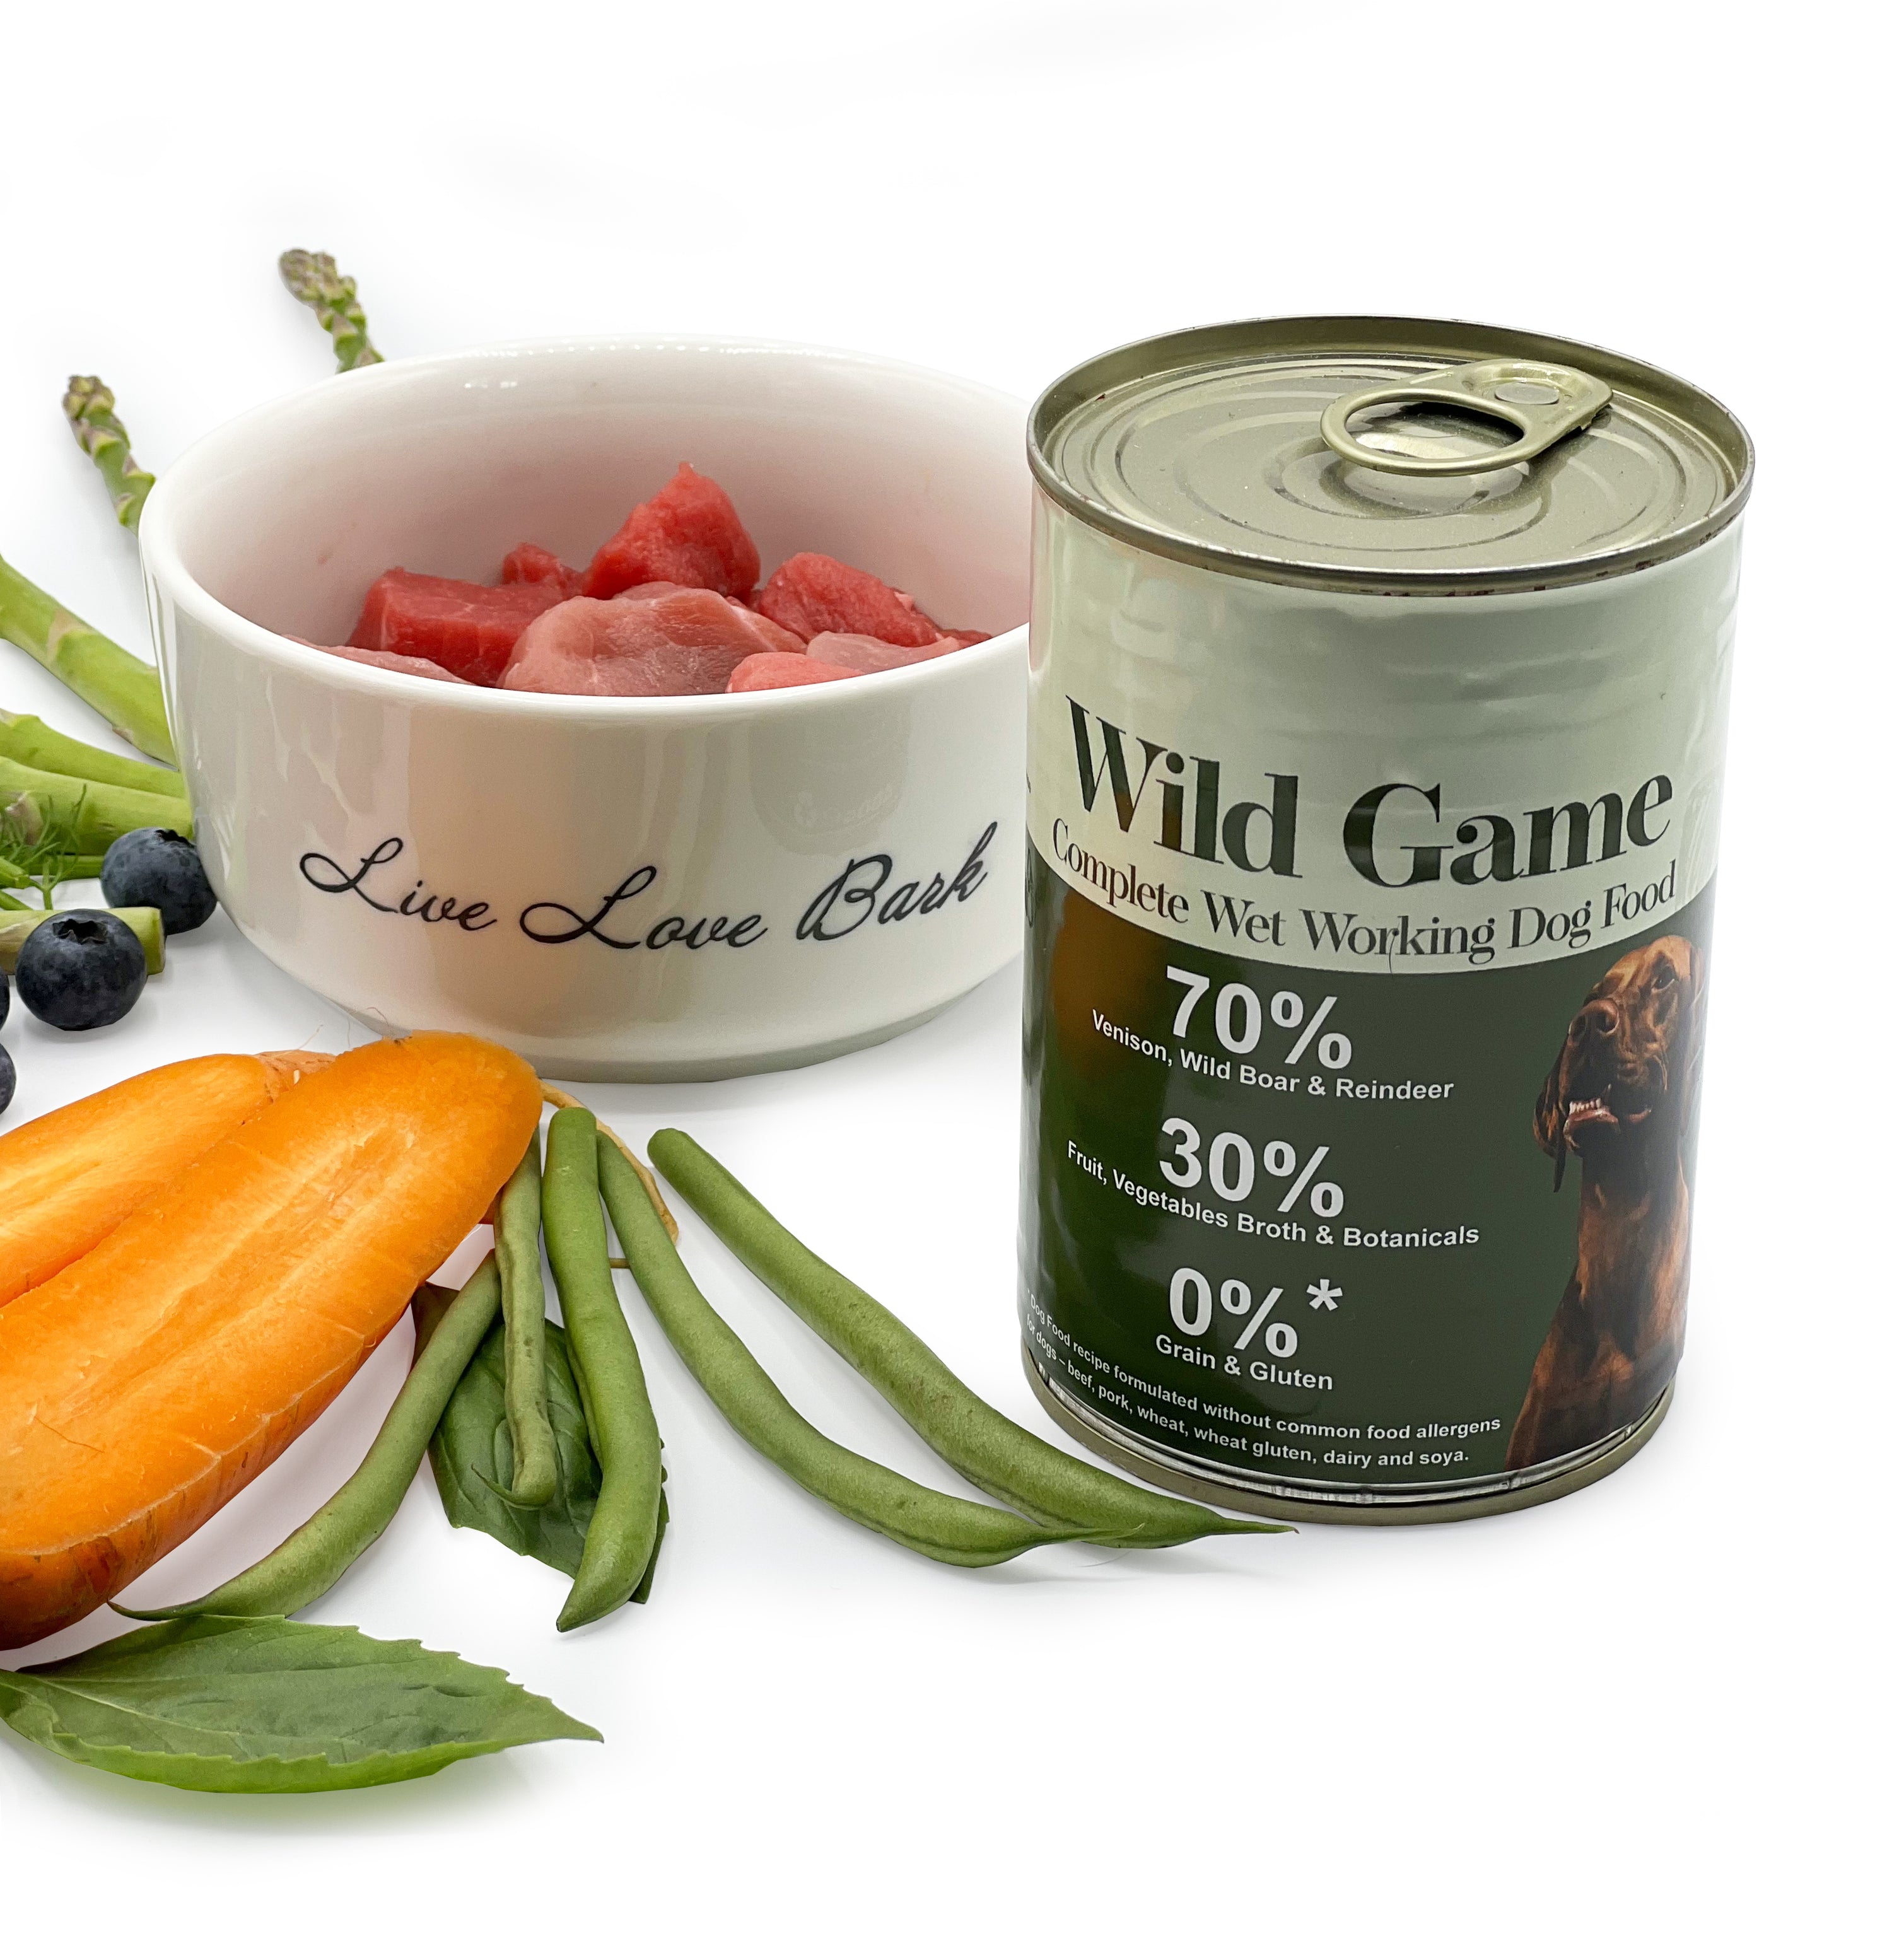 Wild Game - Grain Free Complete Wet Working Dog Food 400g – Wild Antler